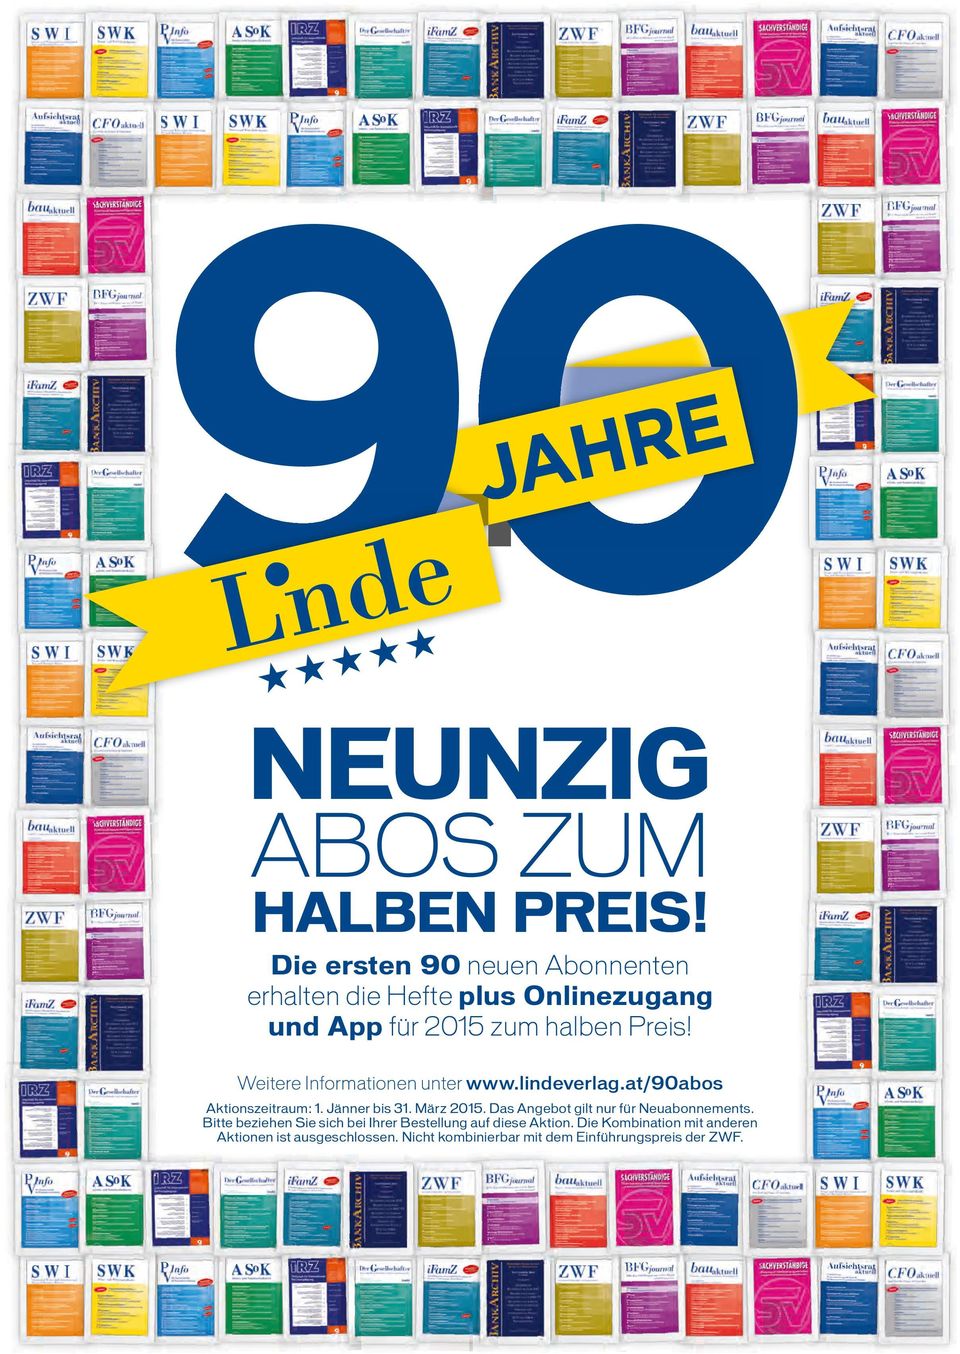 Weitere Informationen unter www.lindeverlag.at/90abos Aktionszeitraum: 1. Jänner bis 31. März 2015.